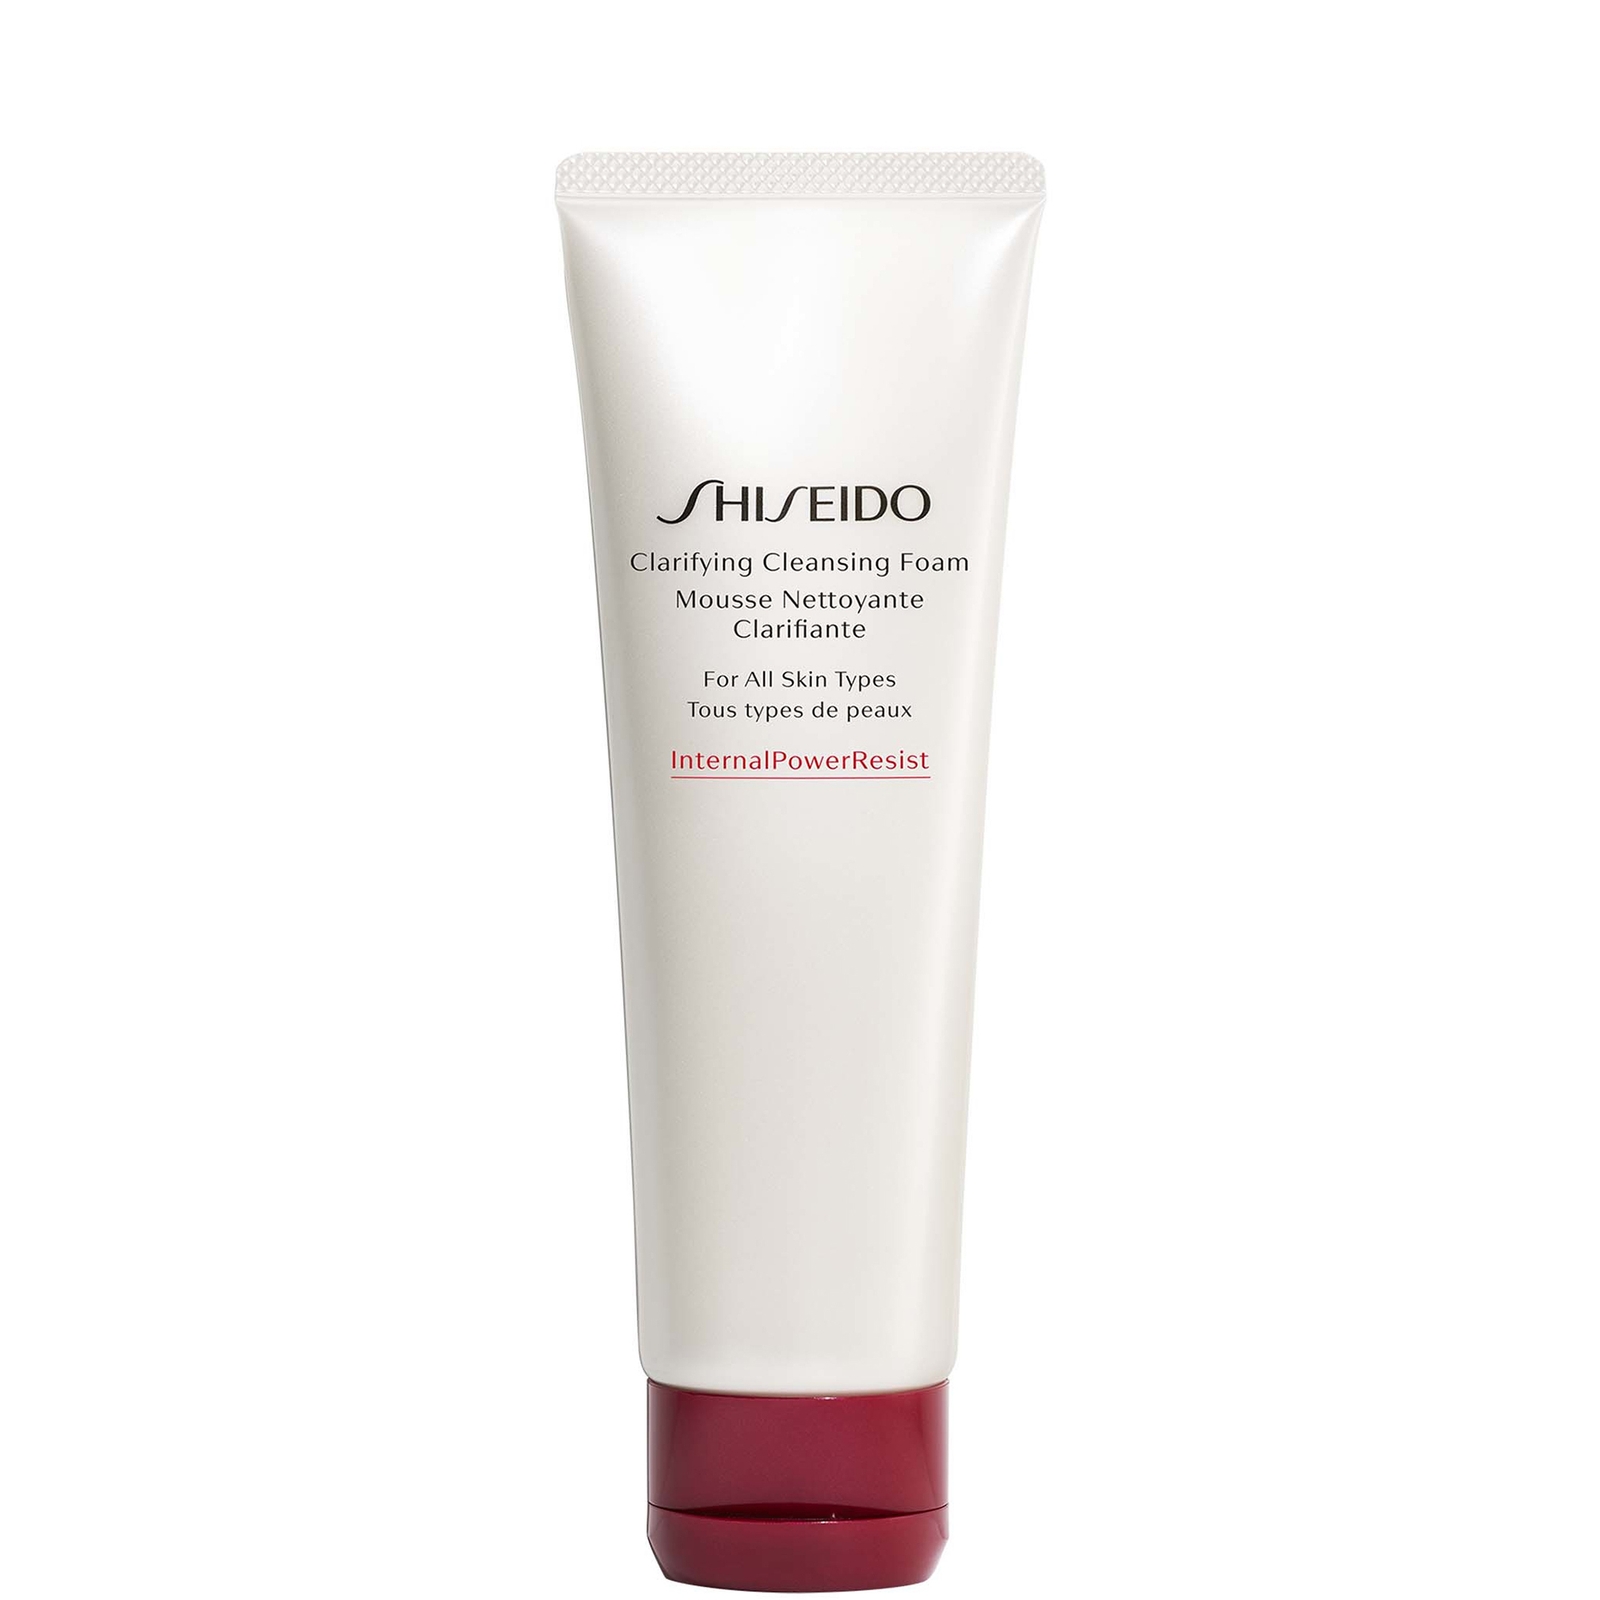 Фото - Засіб для очищення обличчя і тіла Shiseido Clarifying Cleansing Foam 125ml 10114529301 